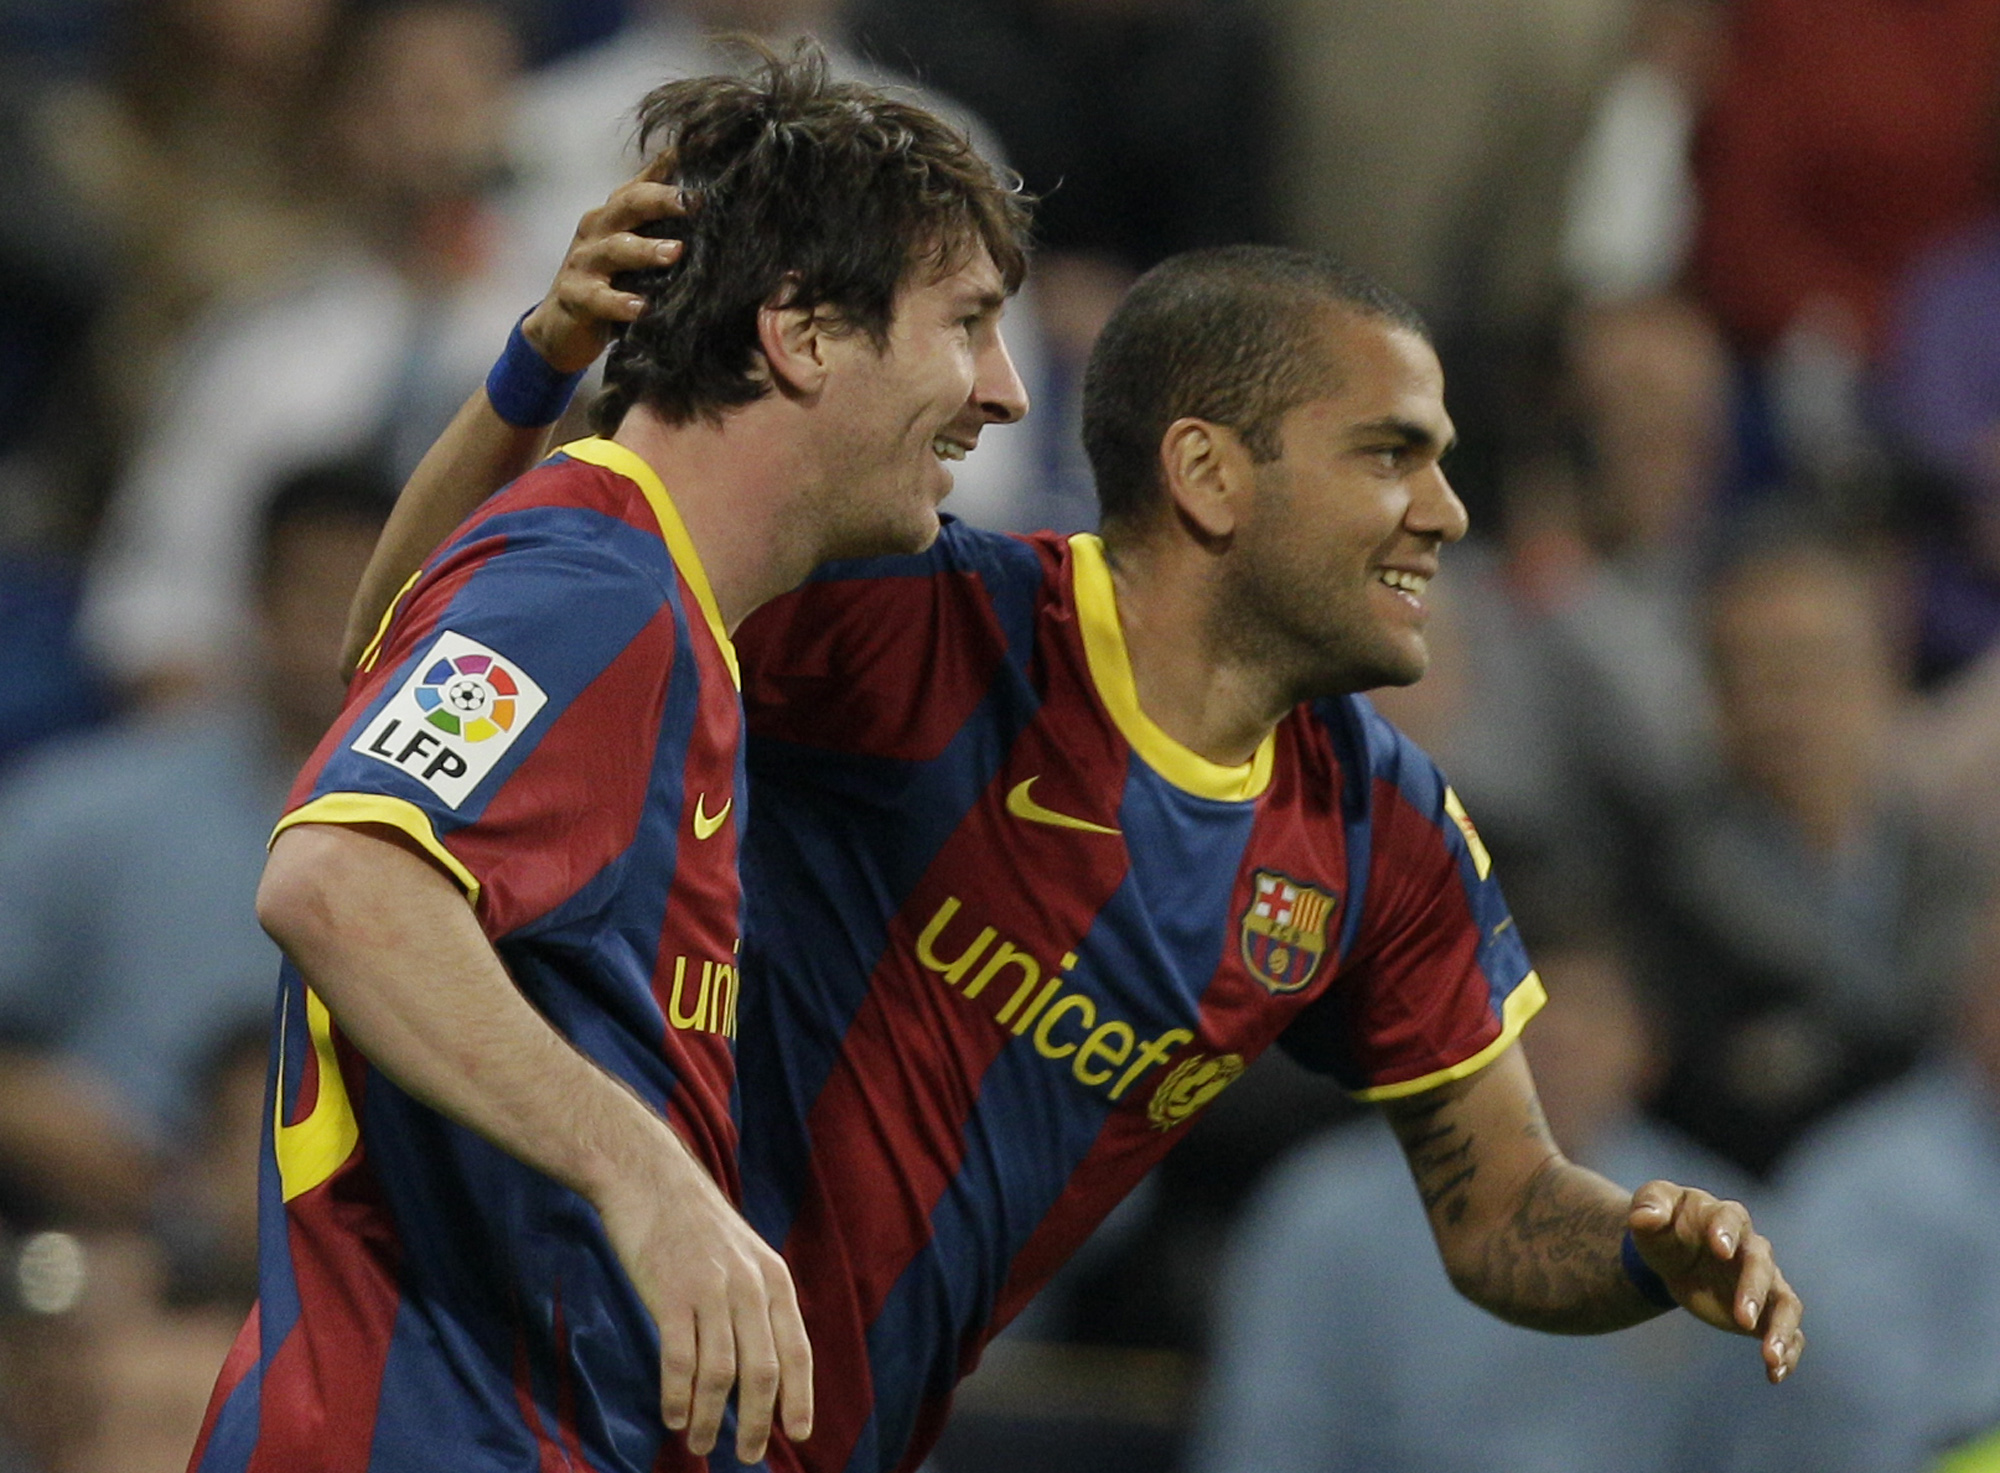 Vem av Leo Messi och Dani Alves får jubla högst i sommarens Copa America?